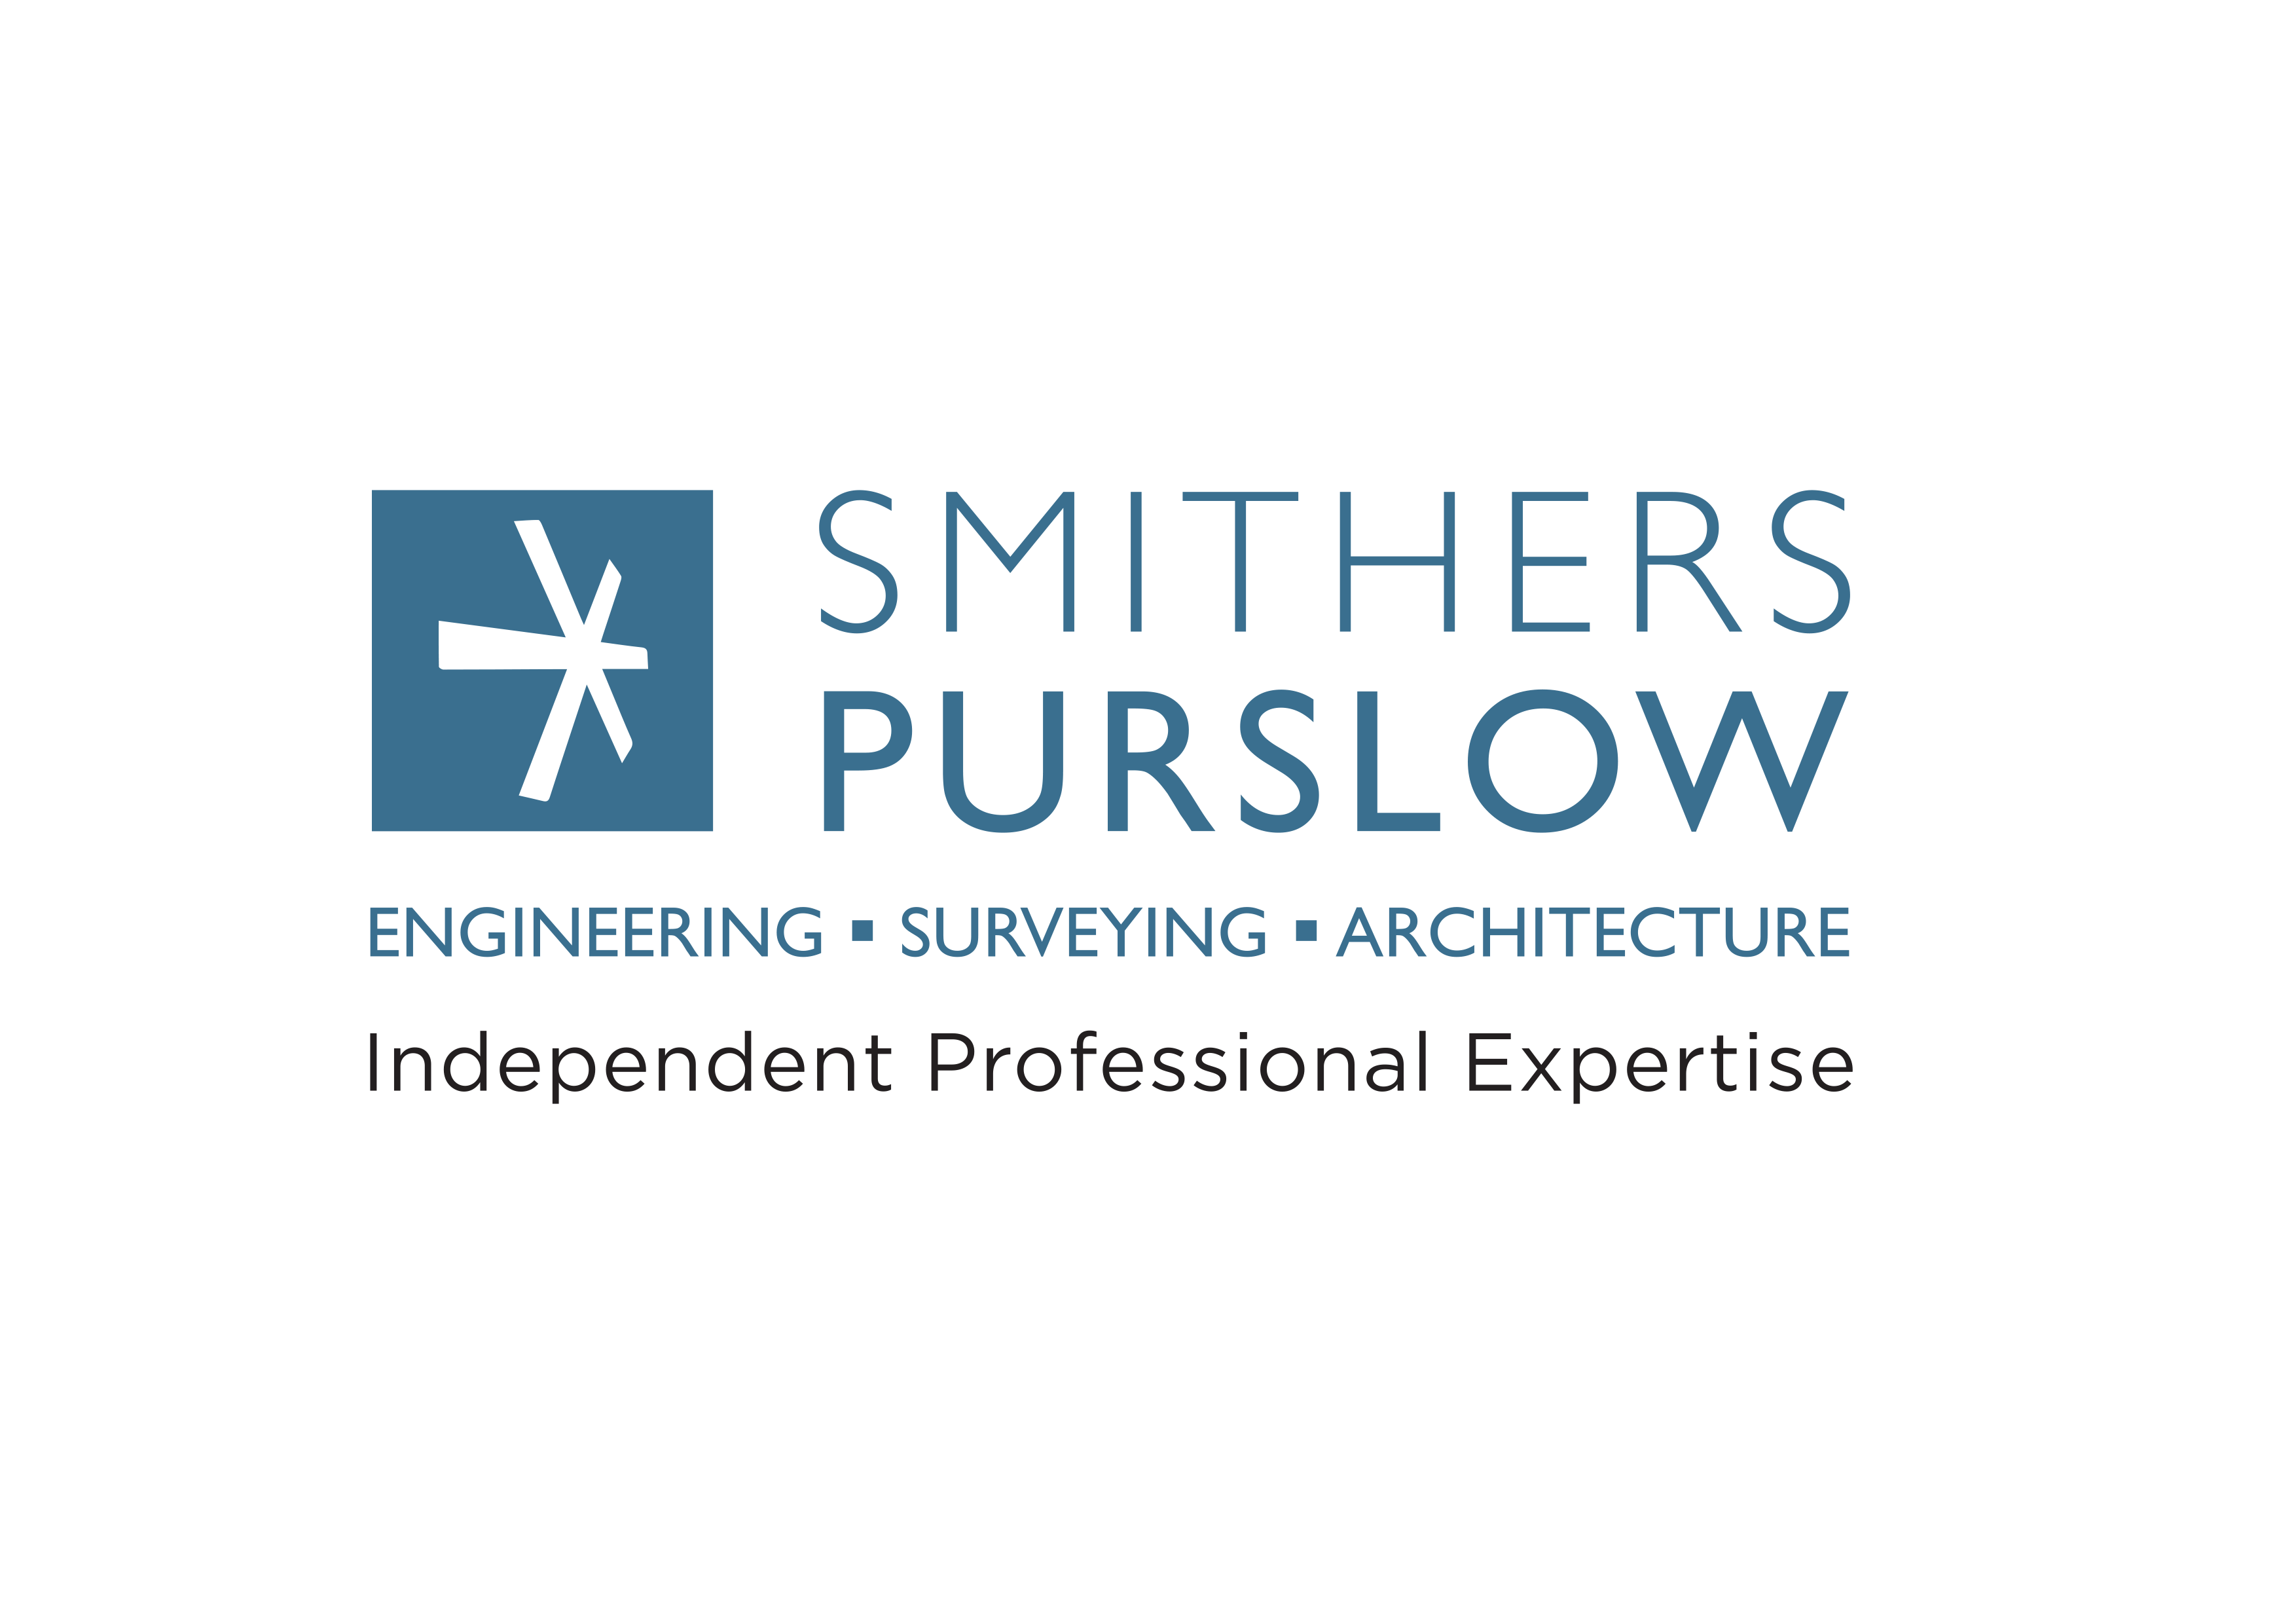 Smithers Purslow Ltd